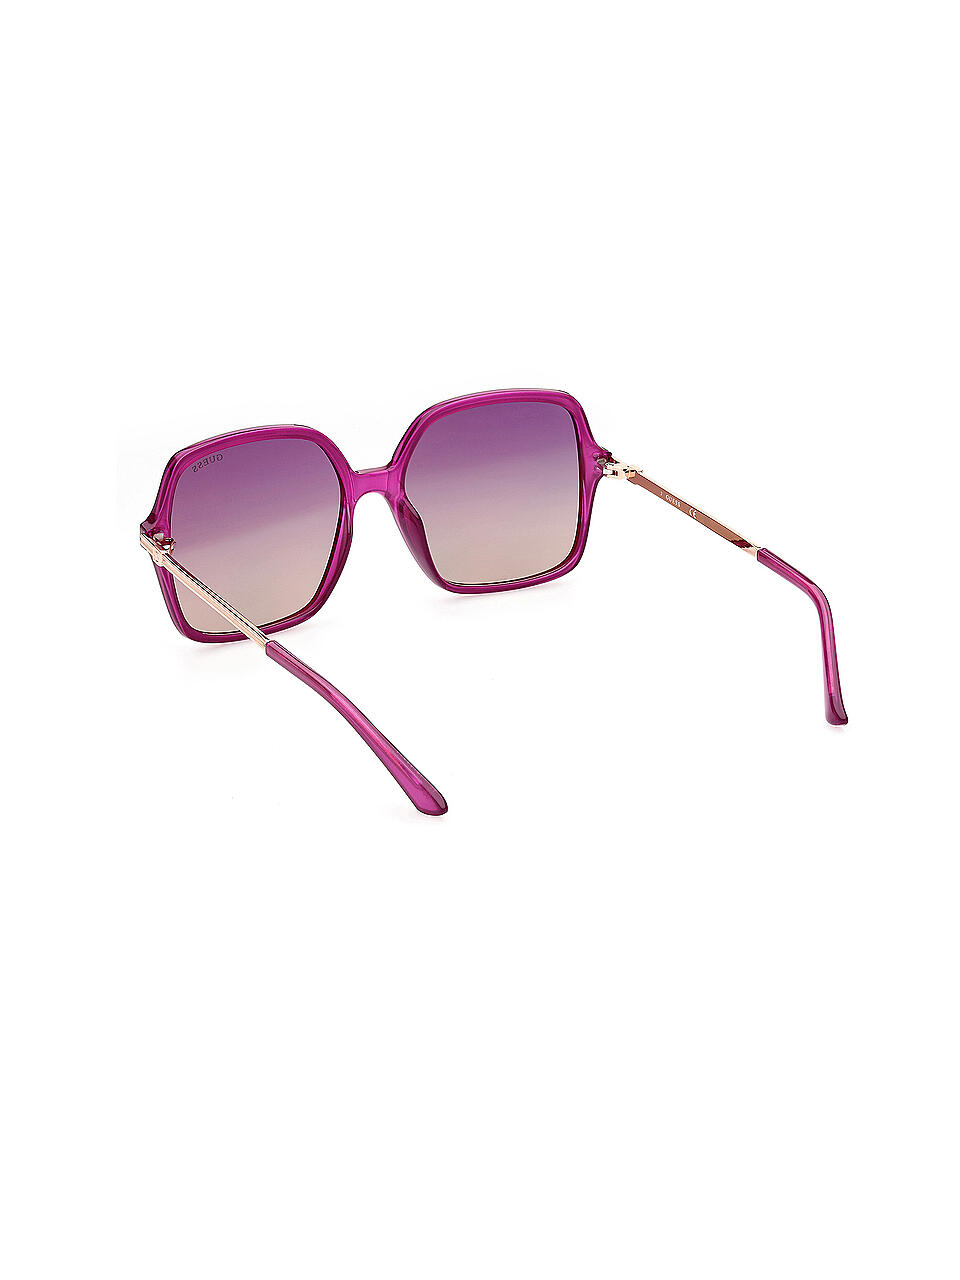 Guess Sonnenbrille in Lila Damen Accessoires Sonnenbrillen 